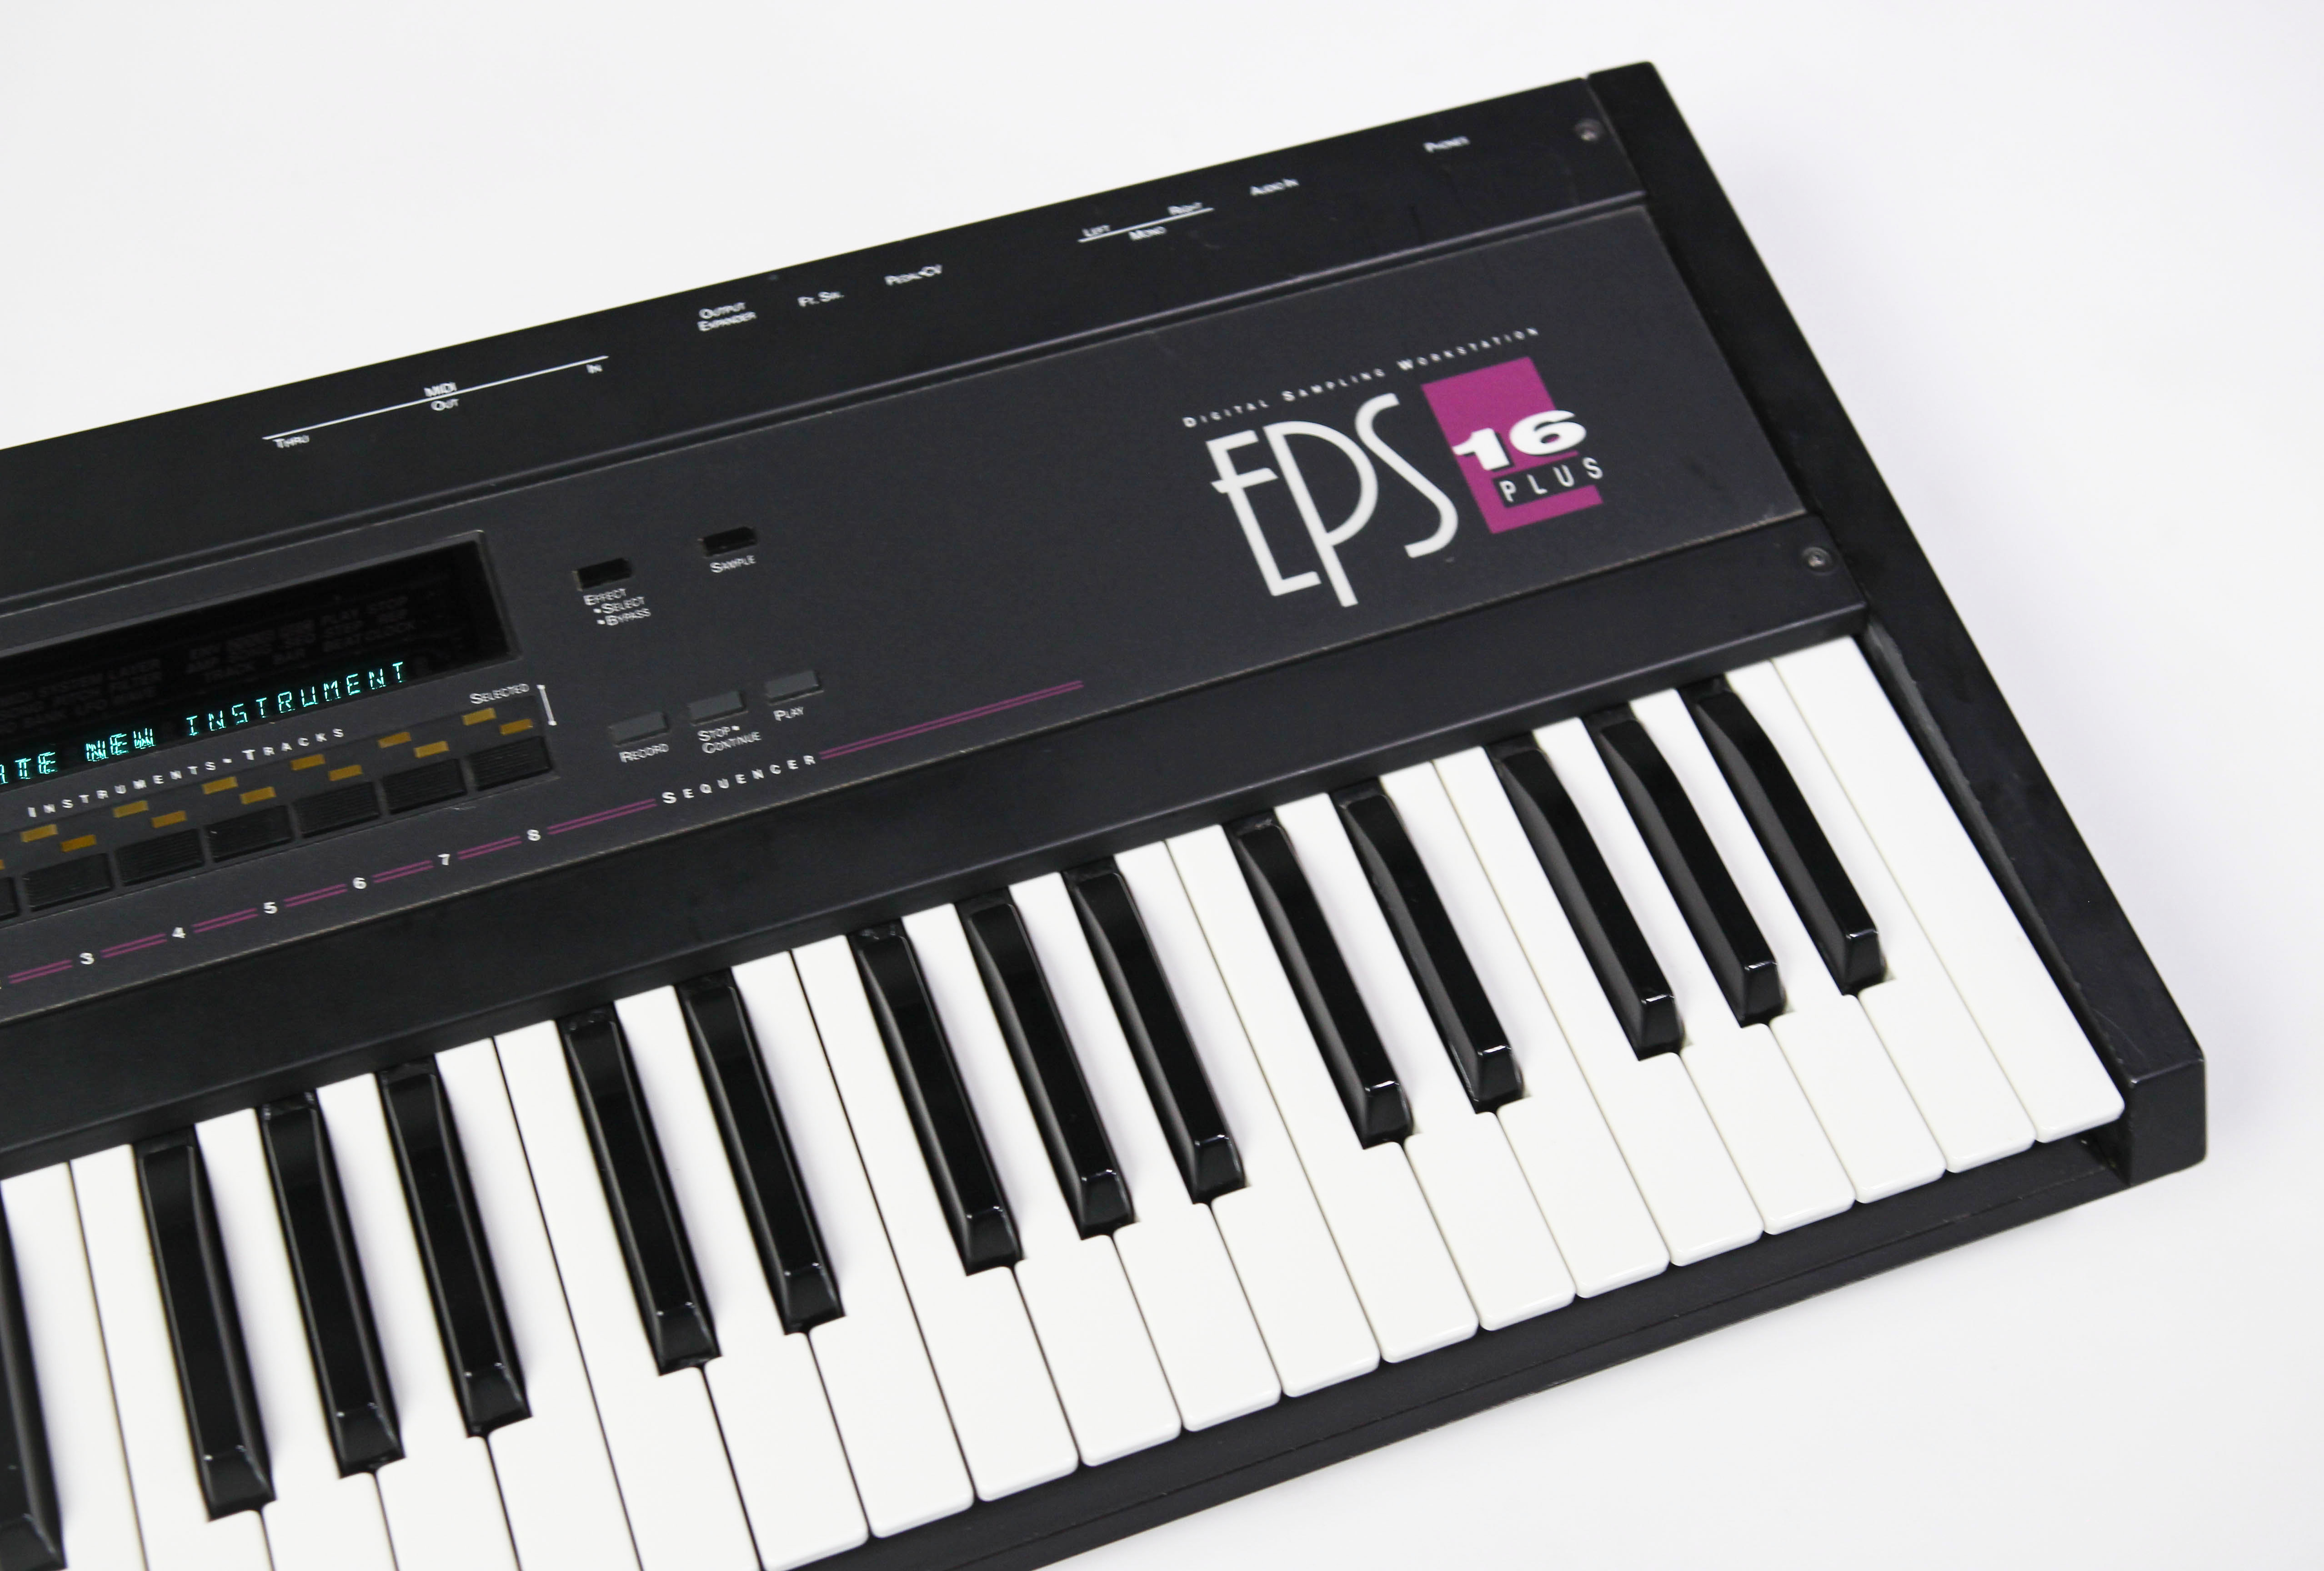 Ensoniq EPS-16 Plus keyboard